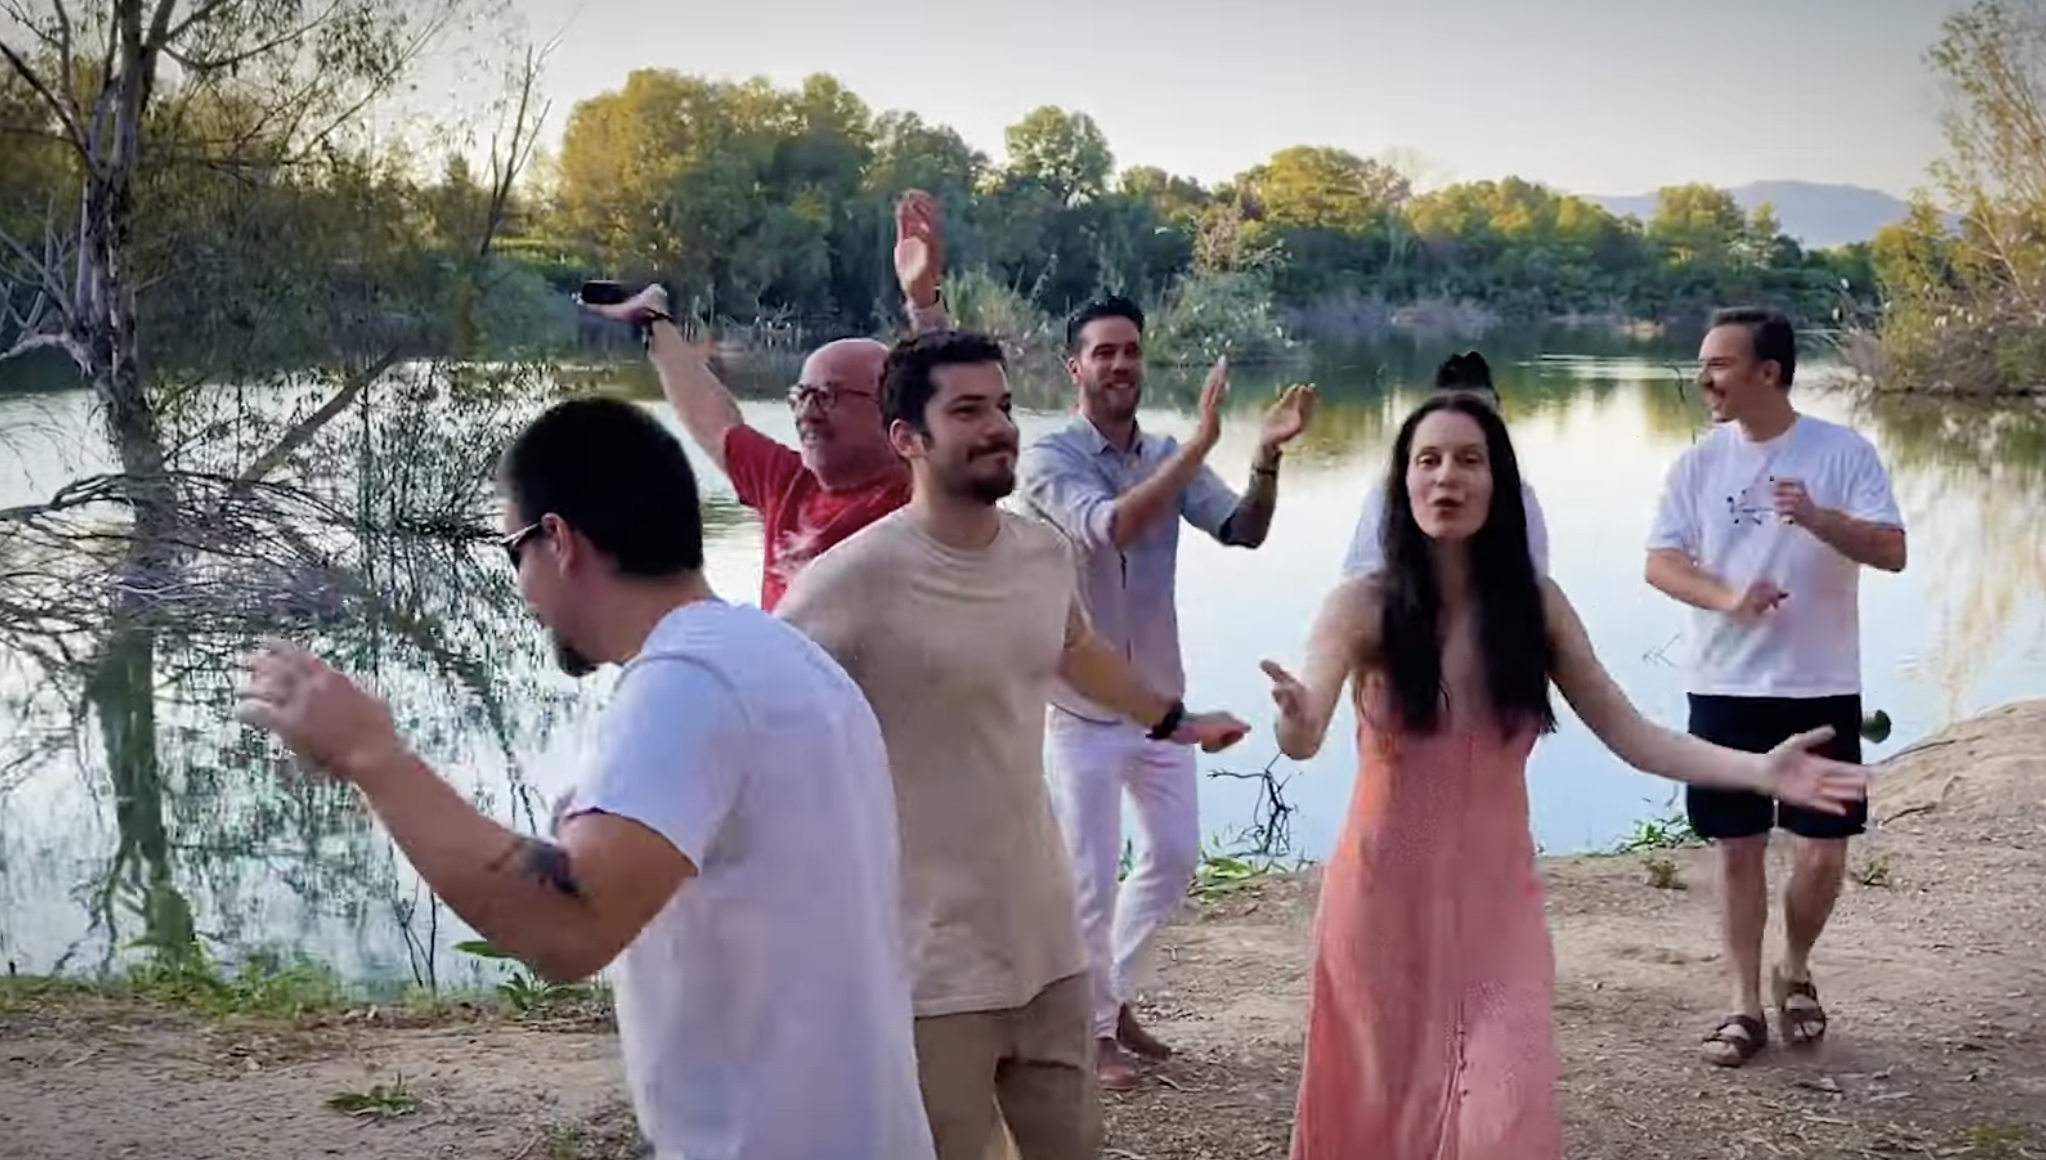 Το νέο τραγούδι της σειράς “Παραδοσιακά Κυπριακά Παραμύθια” ερμηνεύει η Αθηνά Μουστάκα